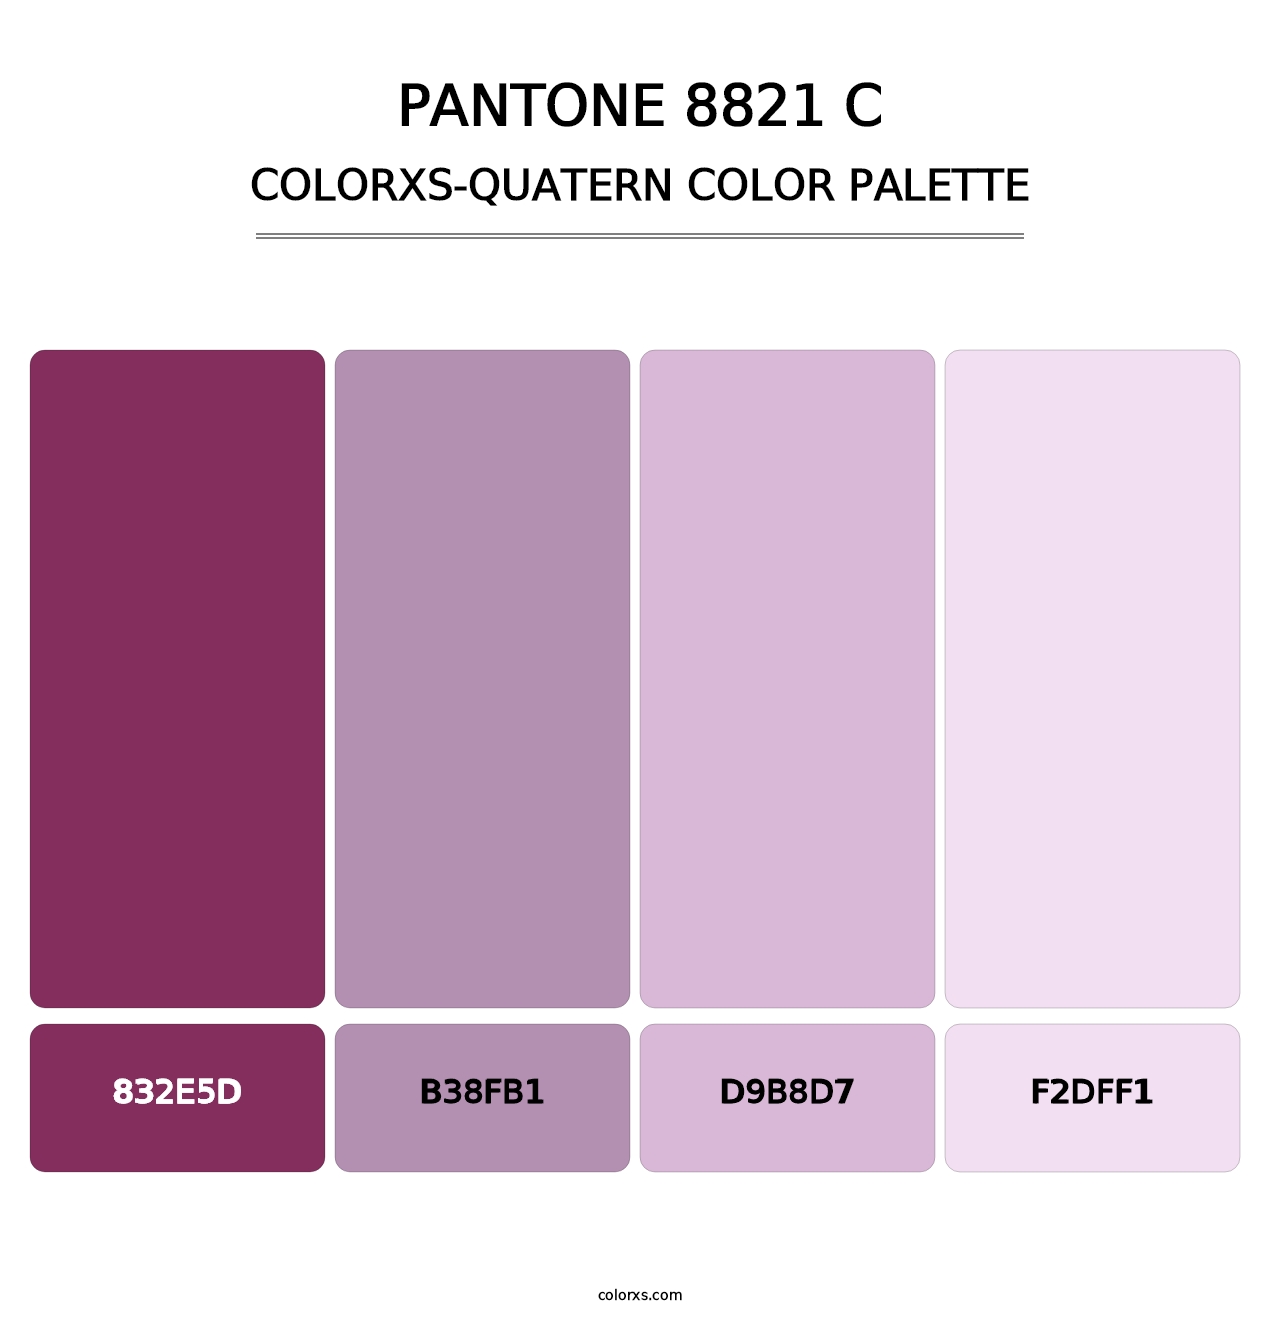 PANTONE 8821 C - Colorxs Quatern Palette